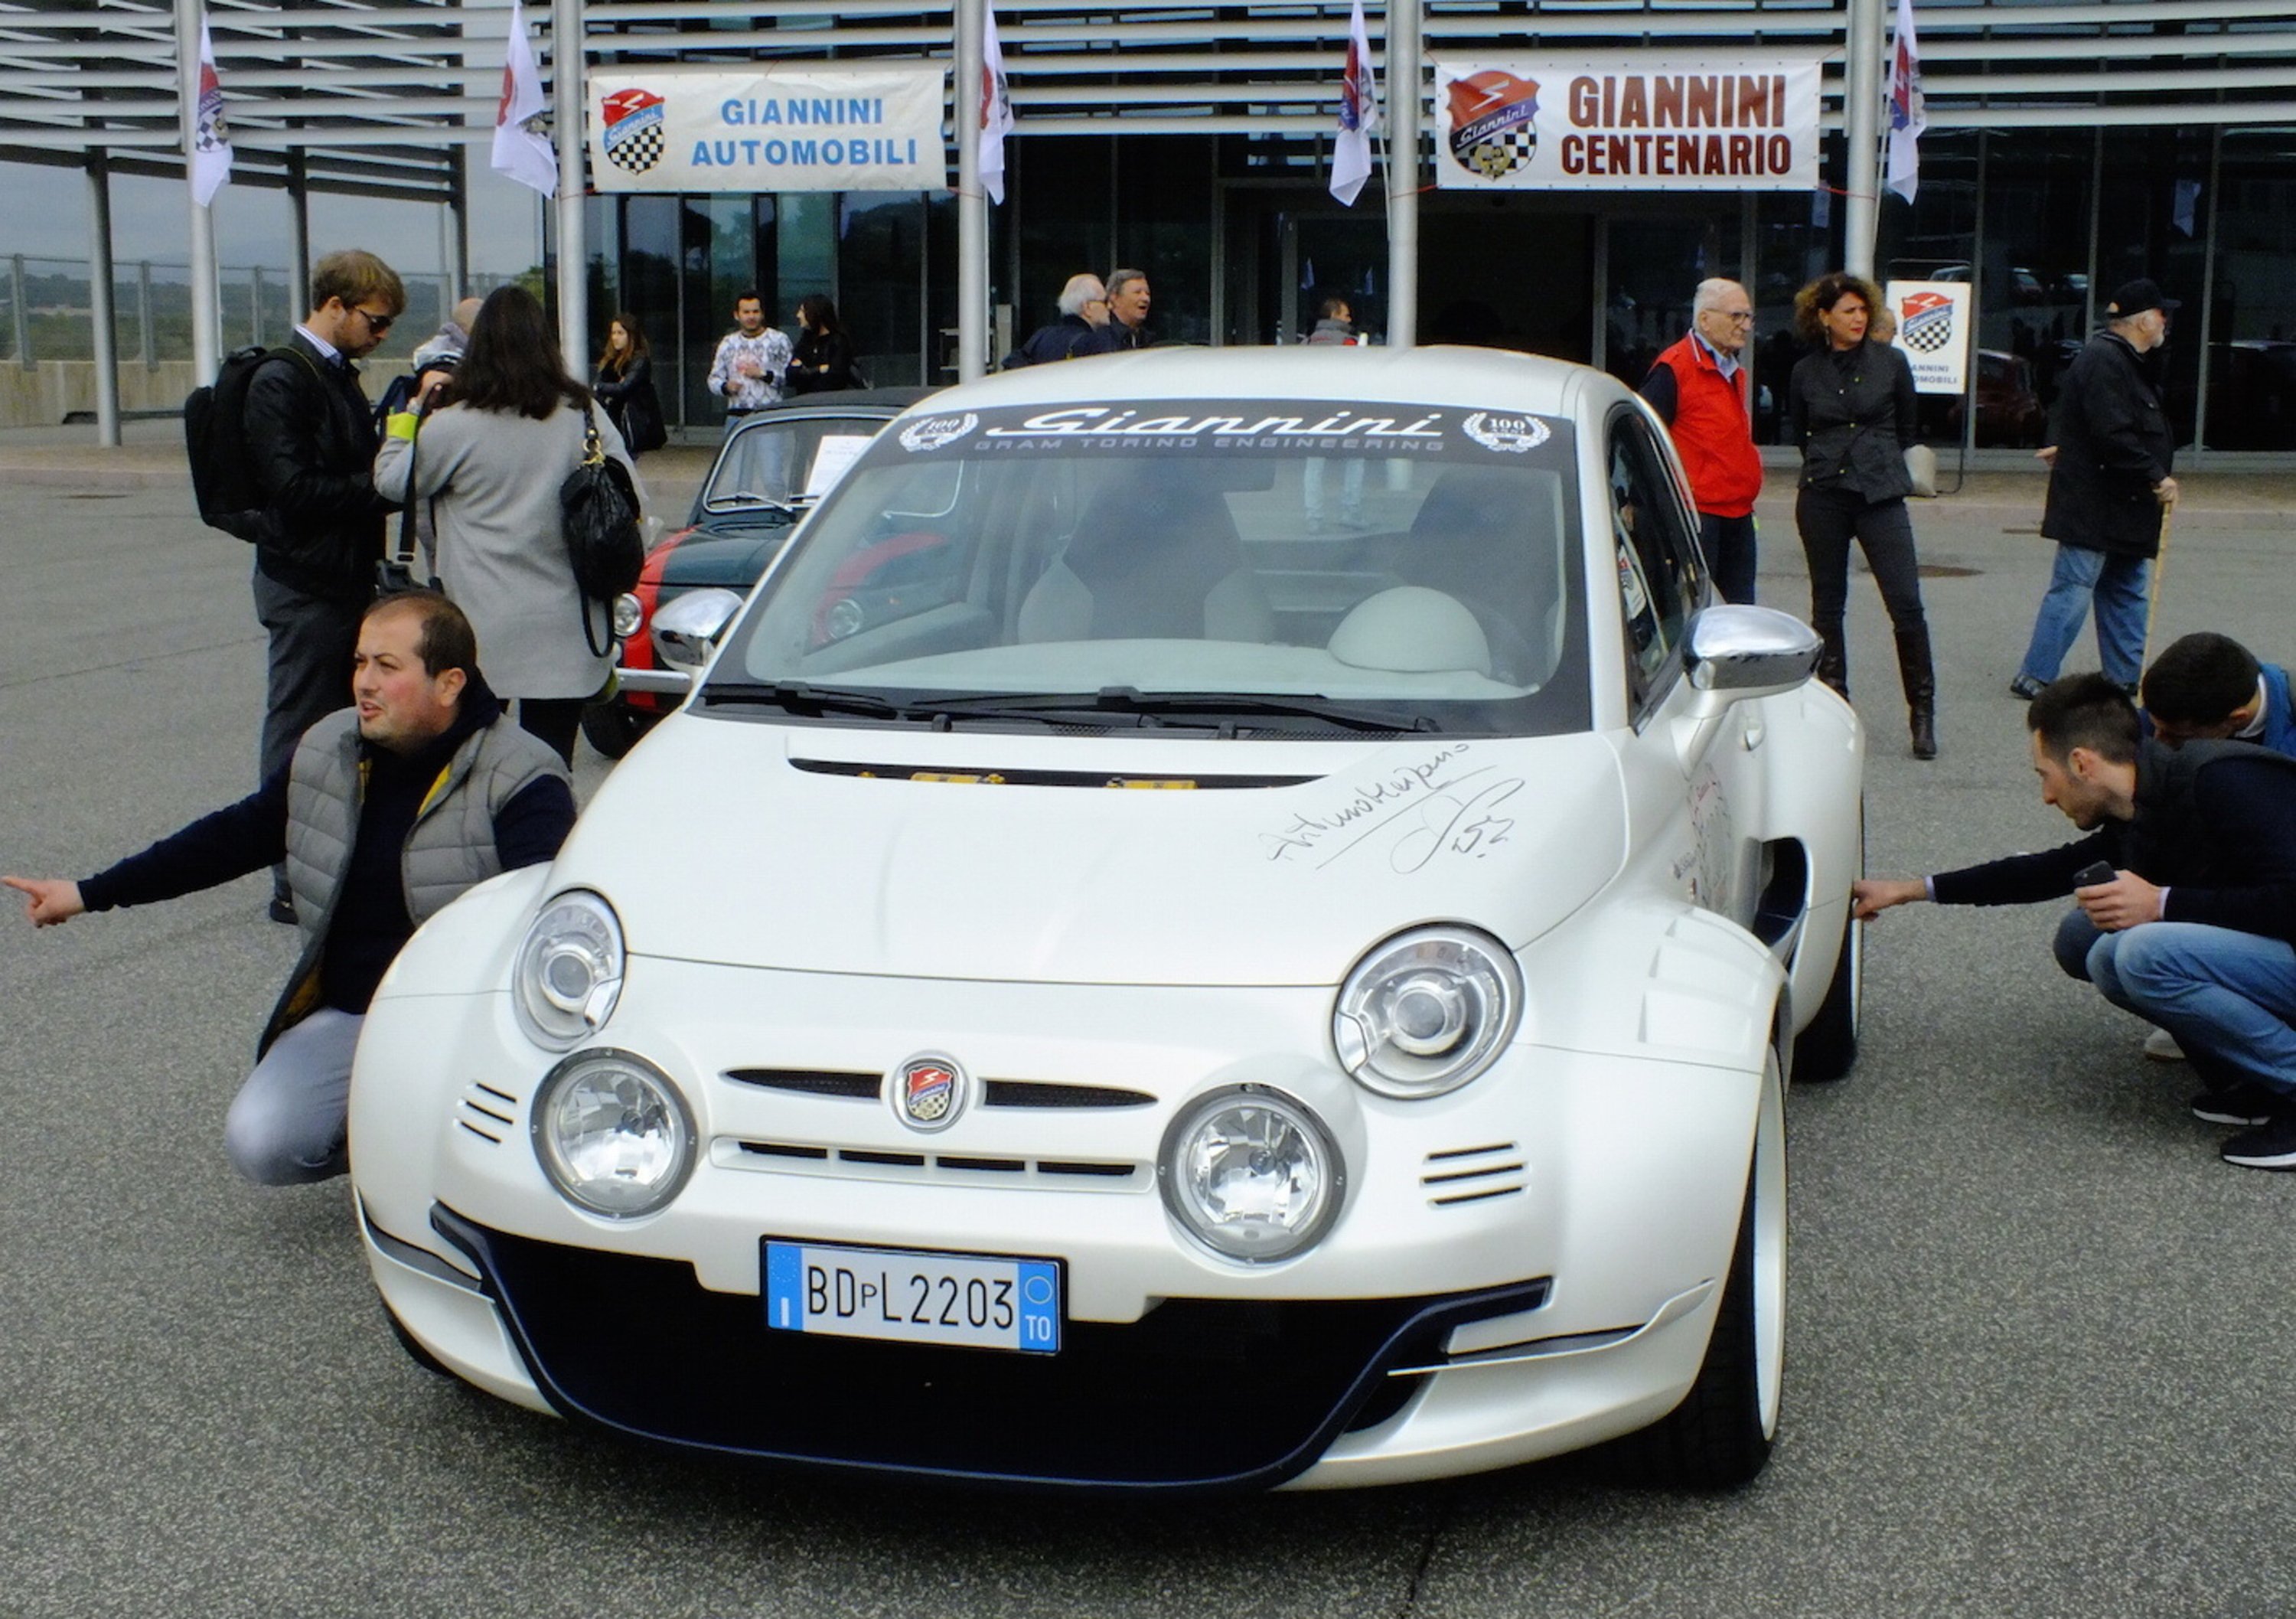 Giannini Automobili: la festa del centenario